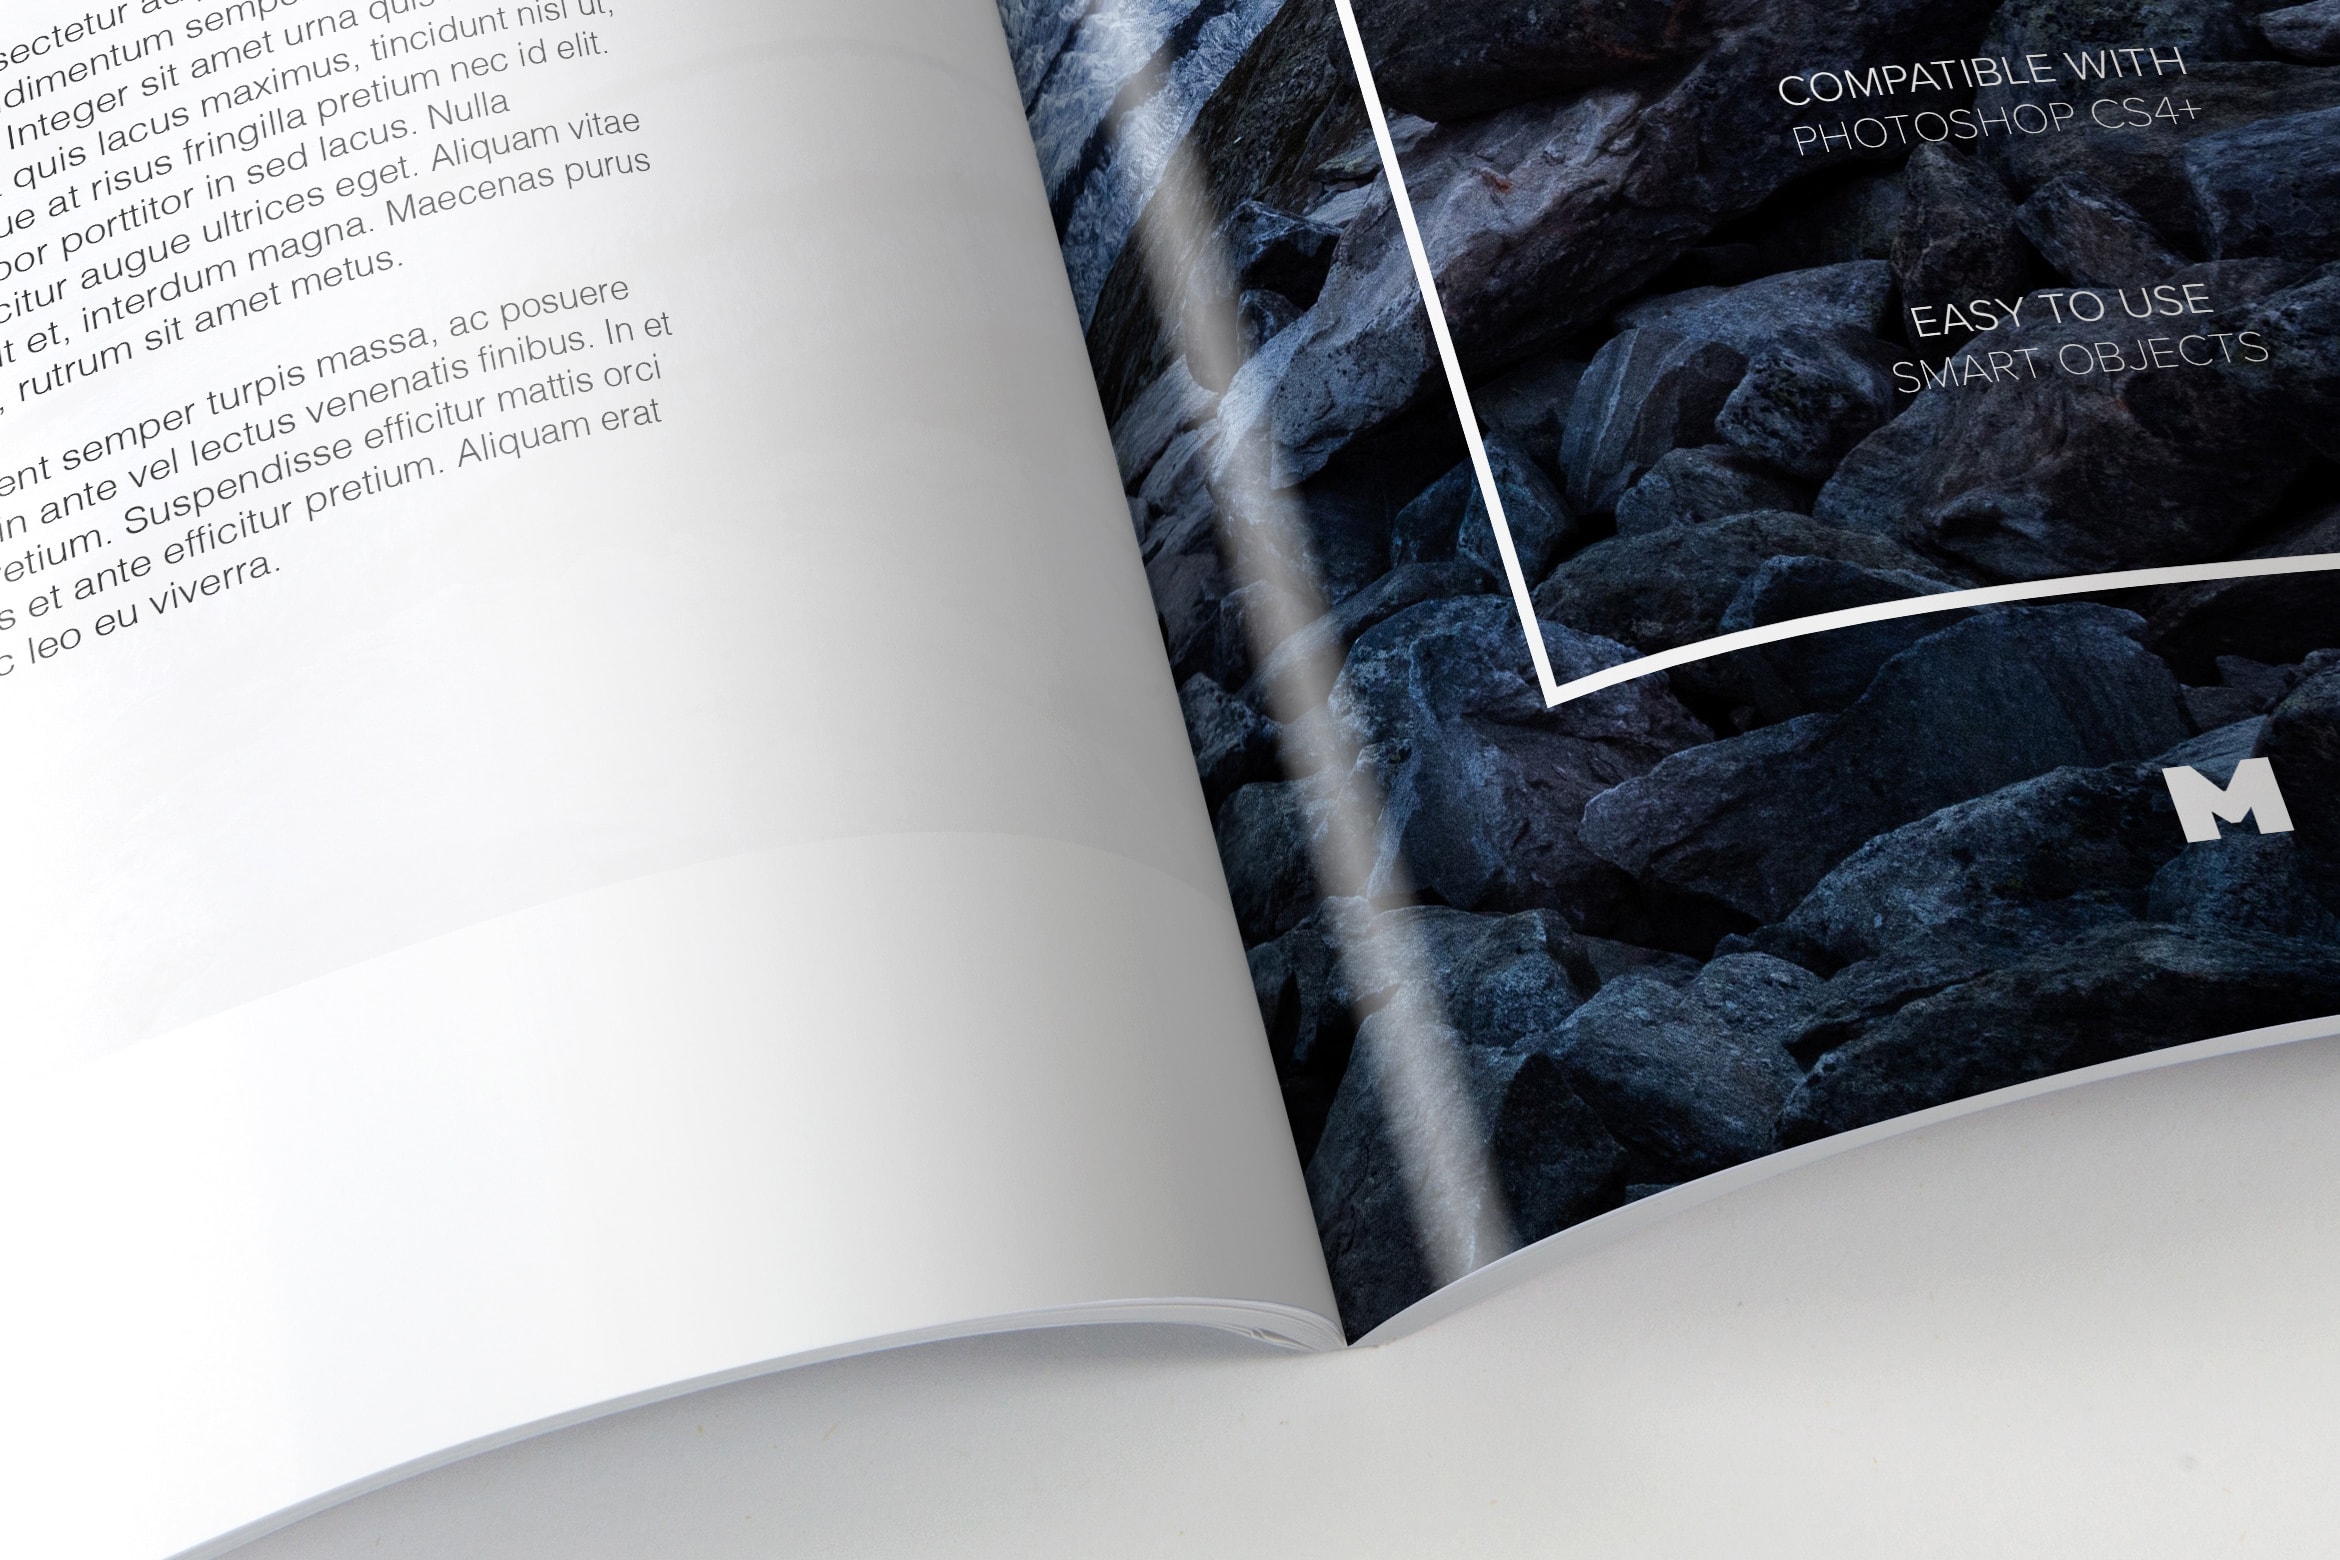 大型杂志内页版式设计印刷效果图样机 Large Magazine Spreads Mockup插图(3)